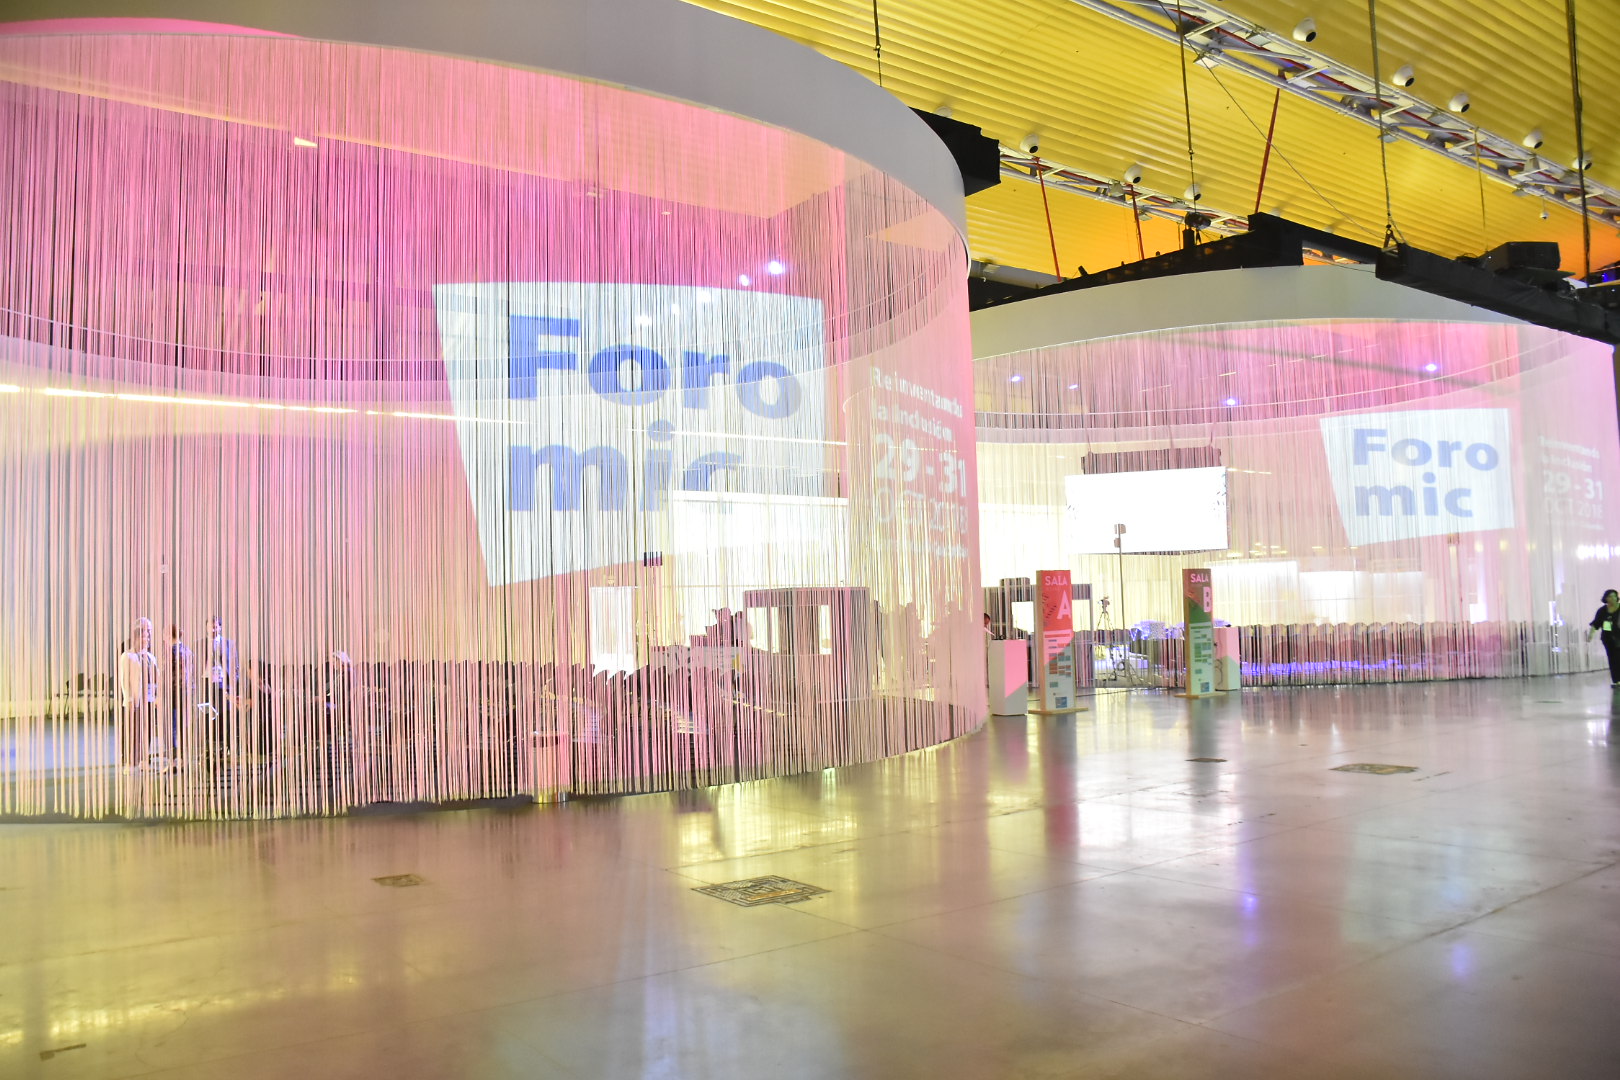 Salas interactivas en el Foromic en Puerta de Oro.